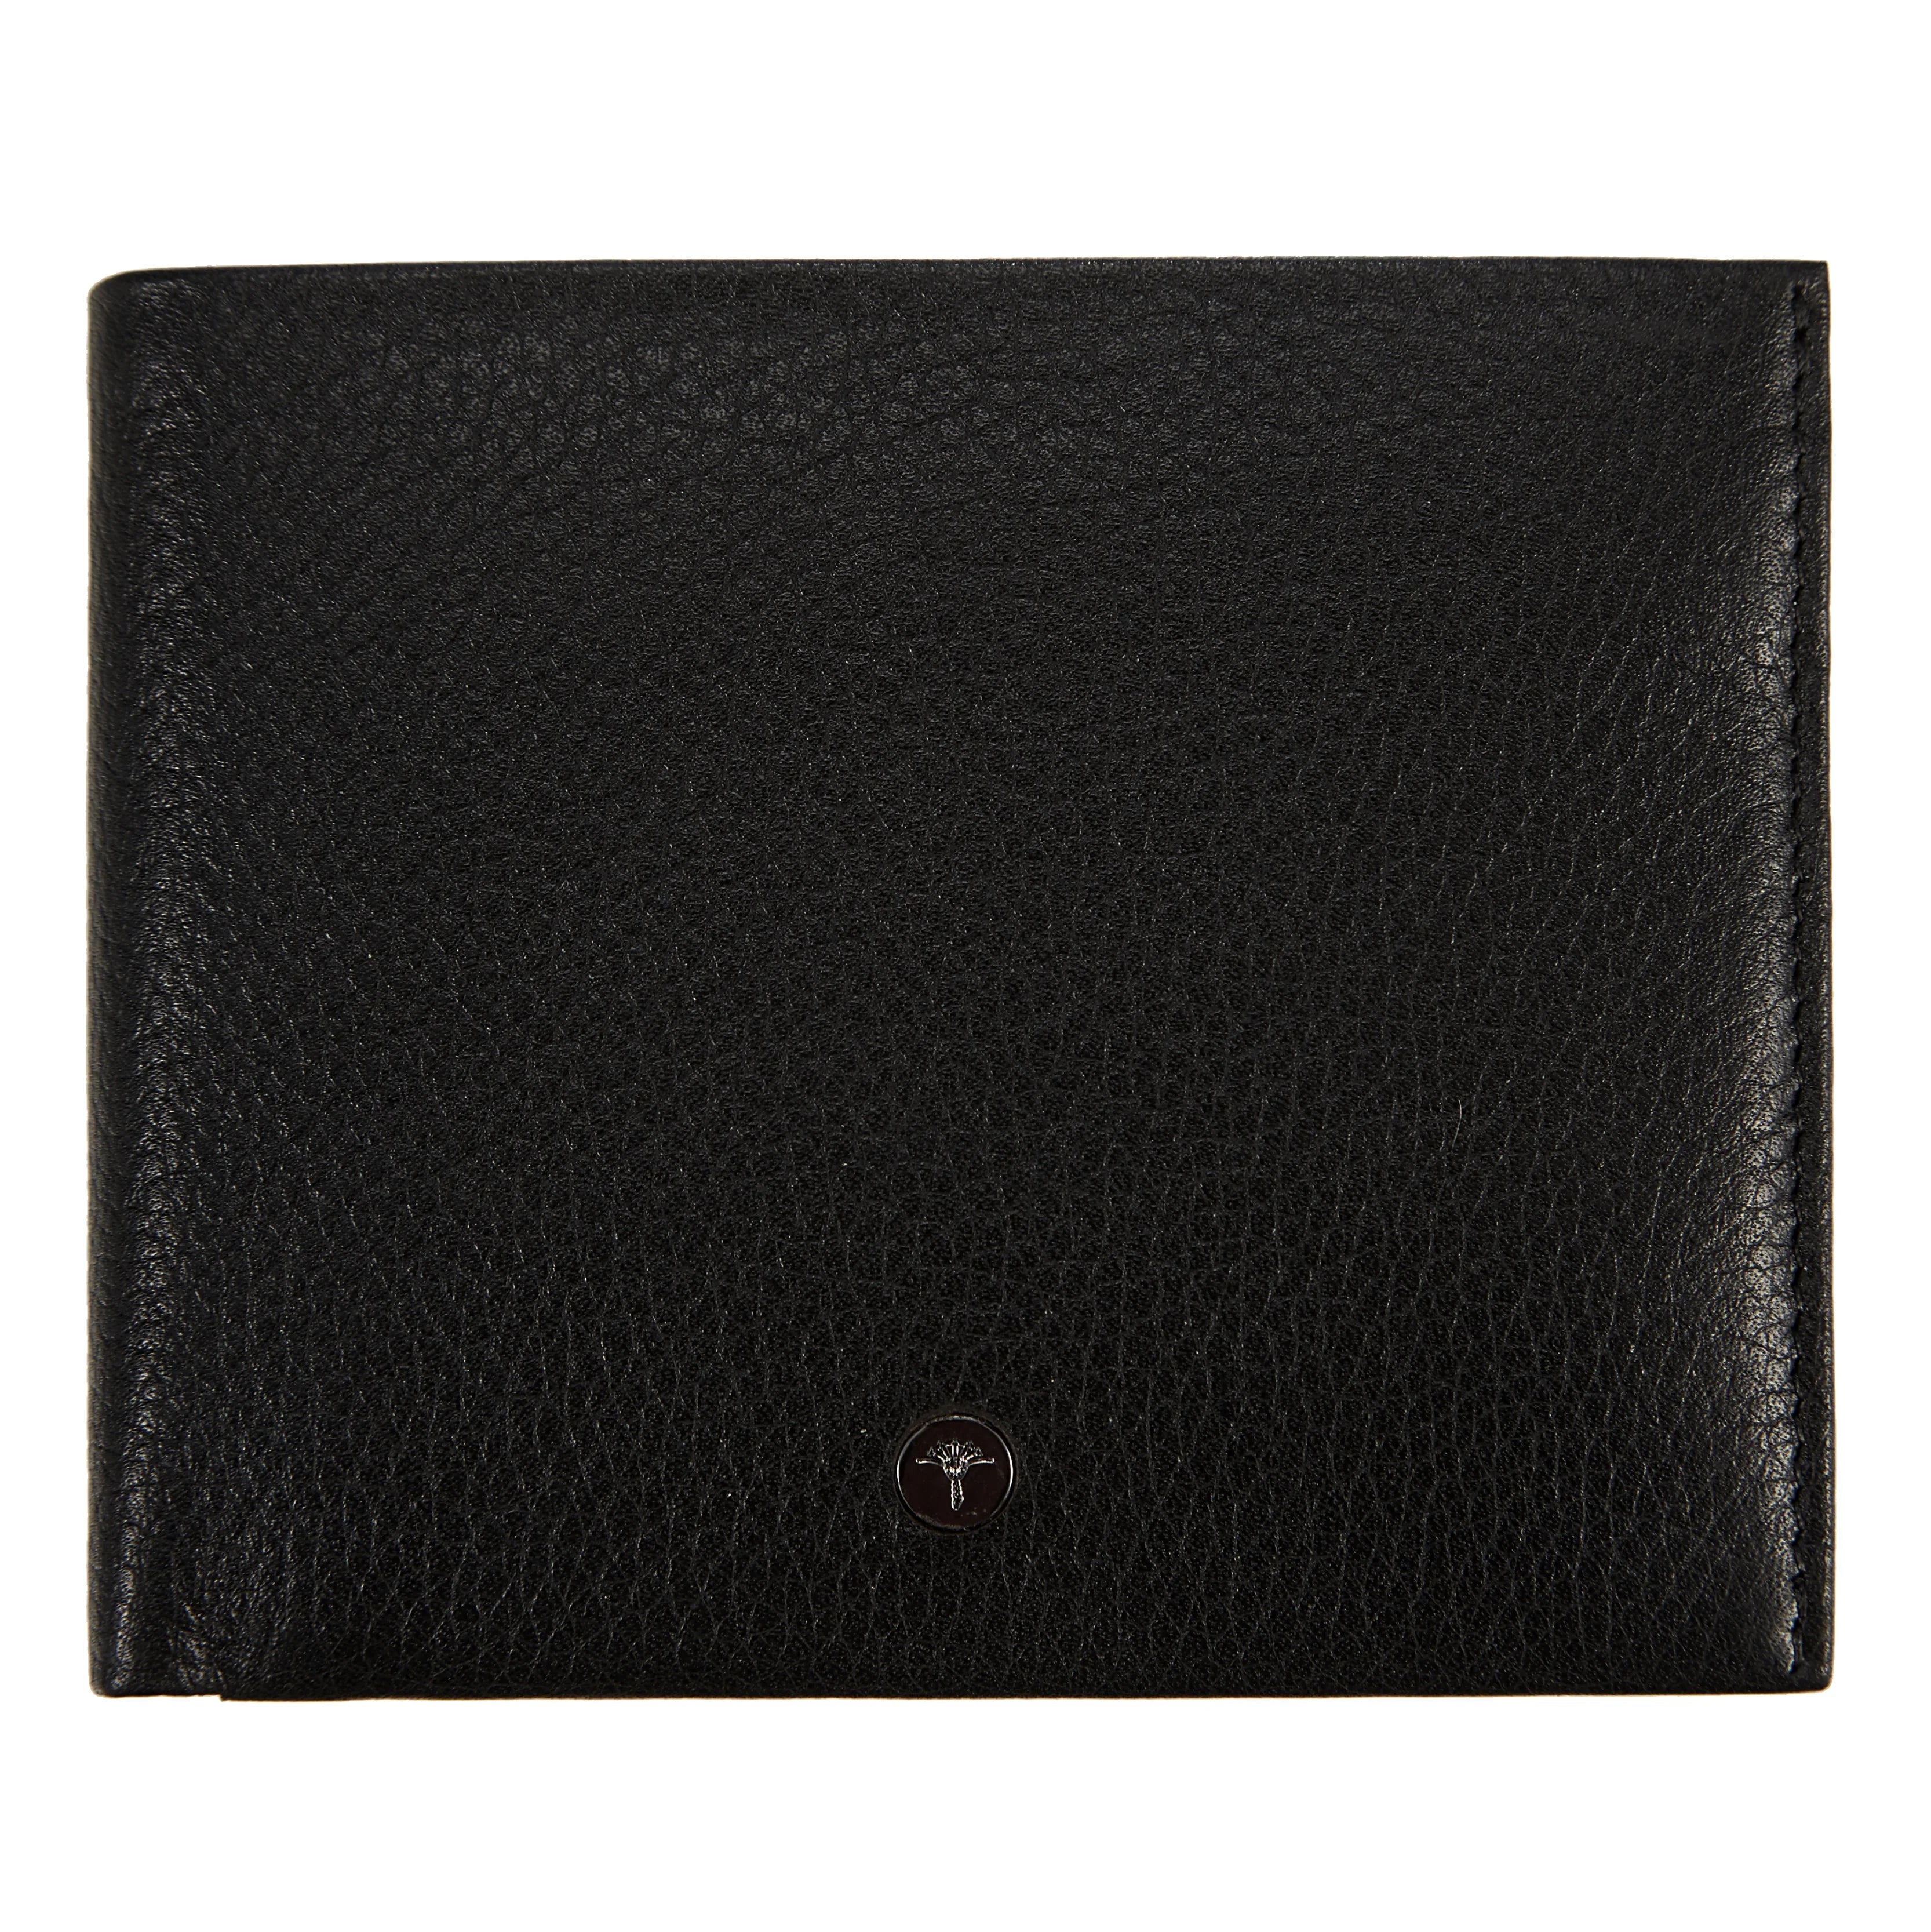 Joop Cardona Ninos wallet 12 cm - black